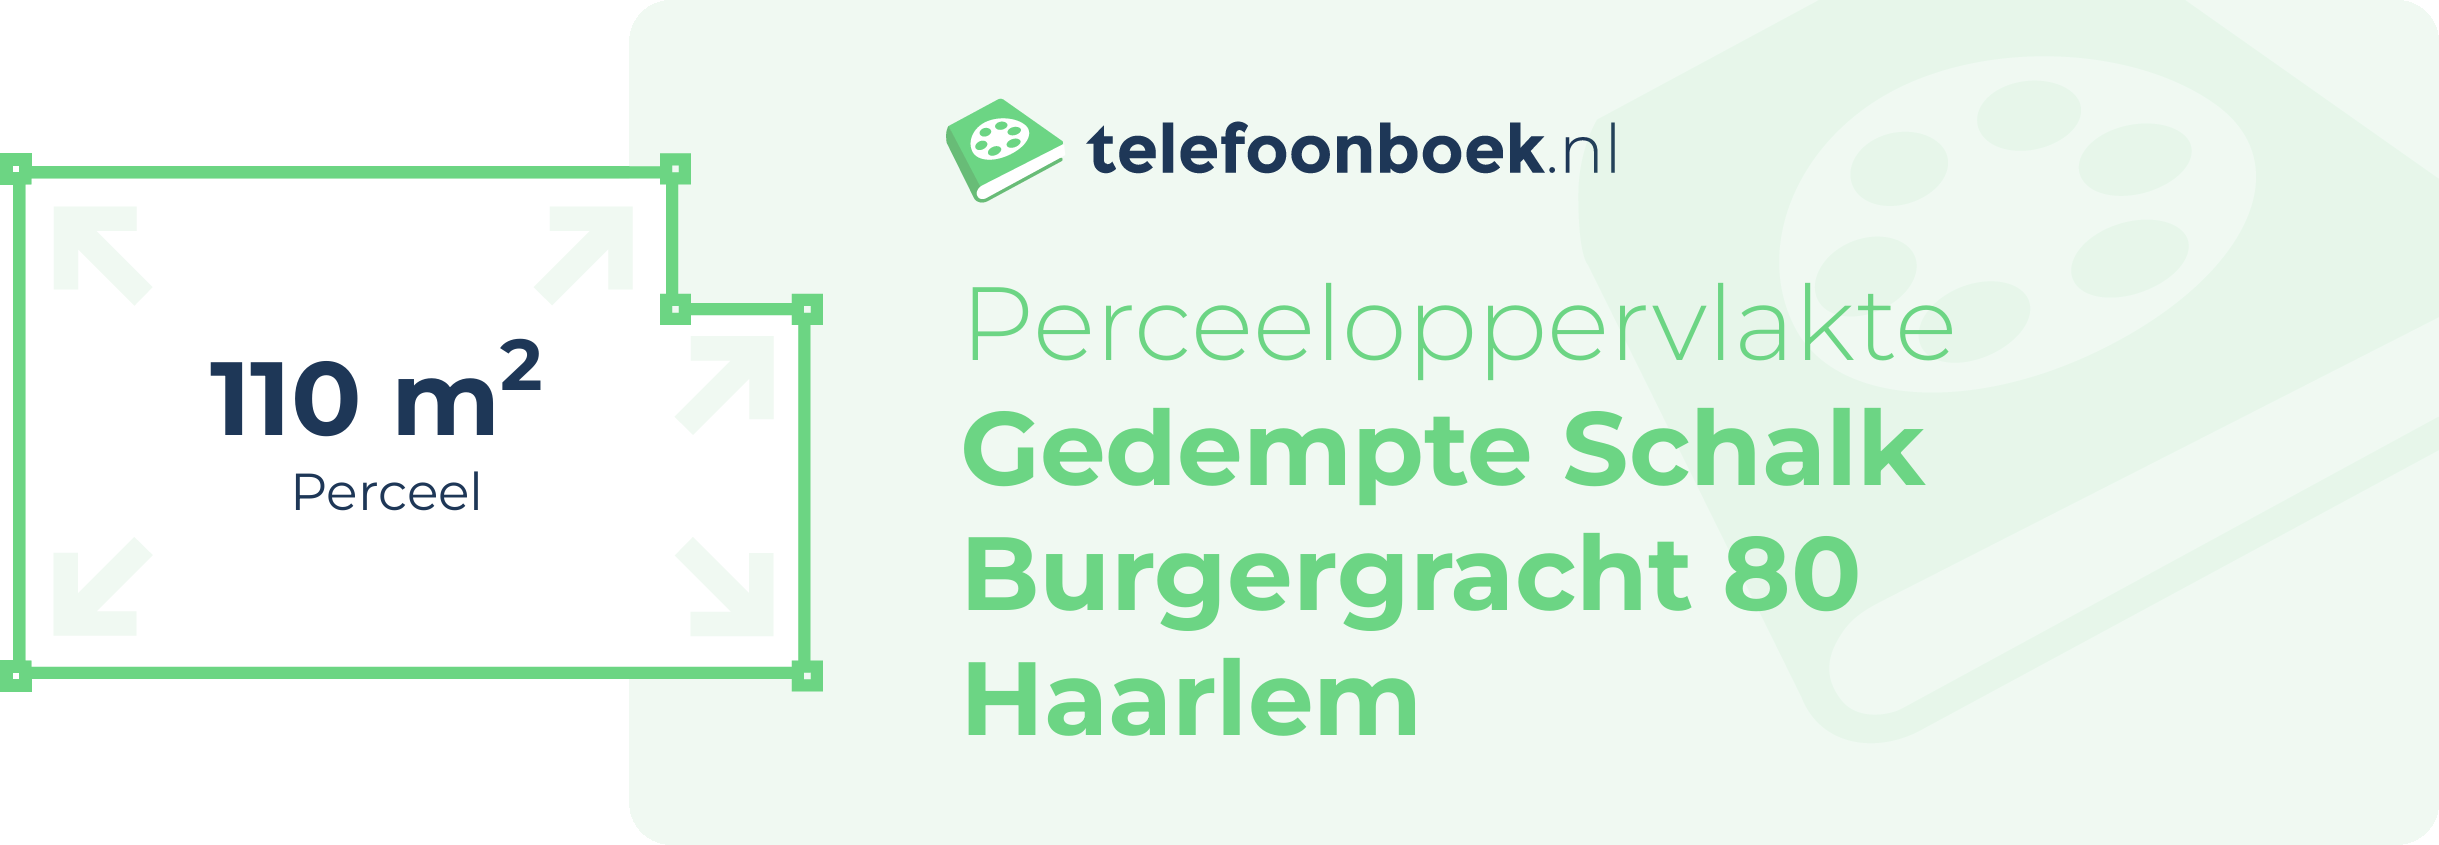 Perceeloppervlakte Gedempte Schalk Burgergracht 80 Haarlem